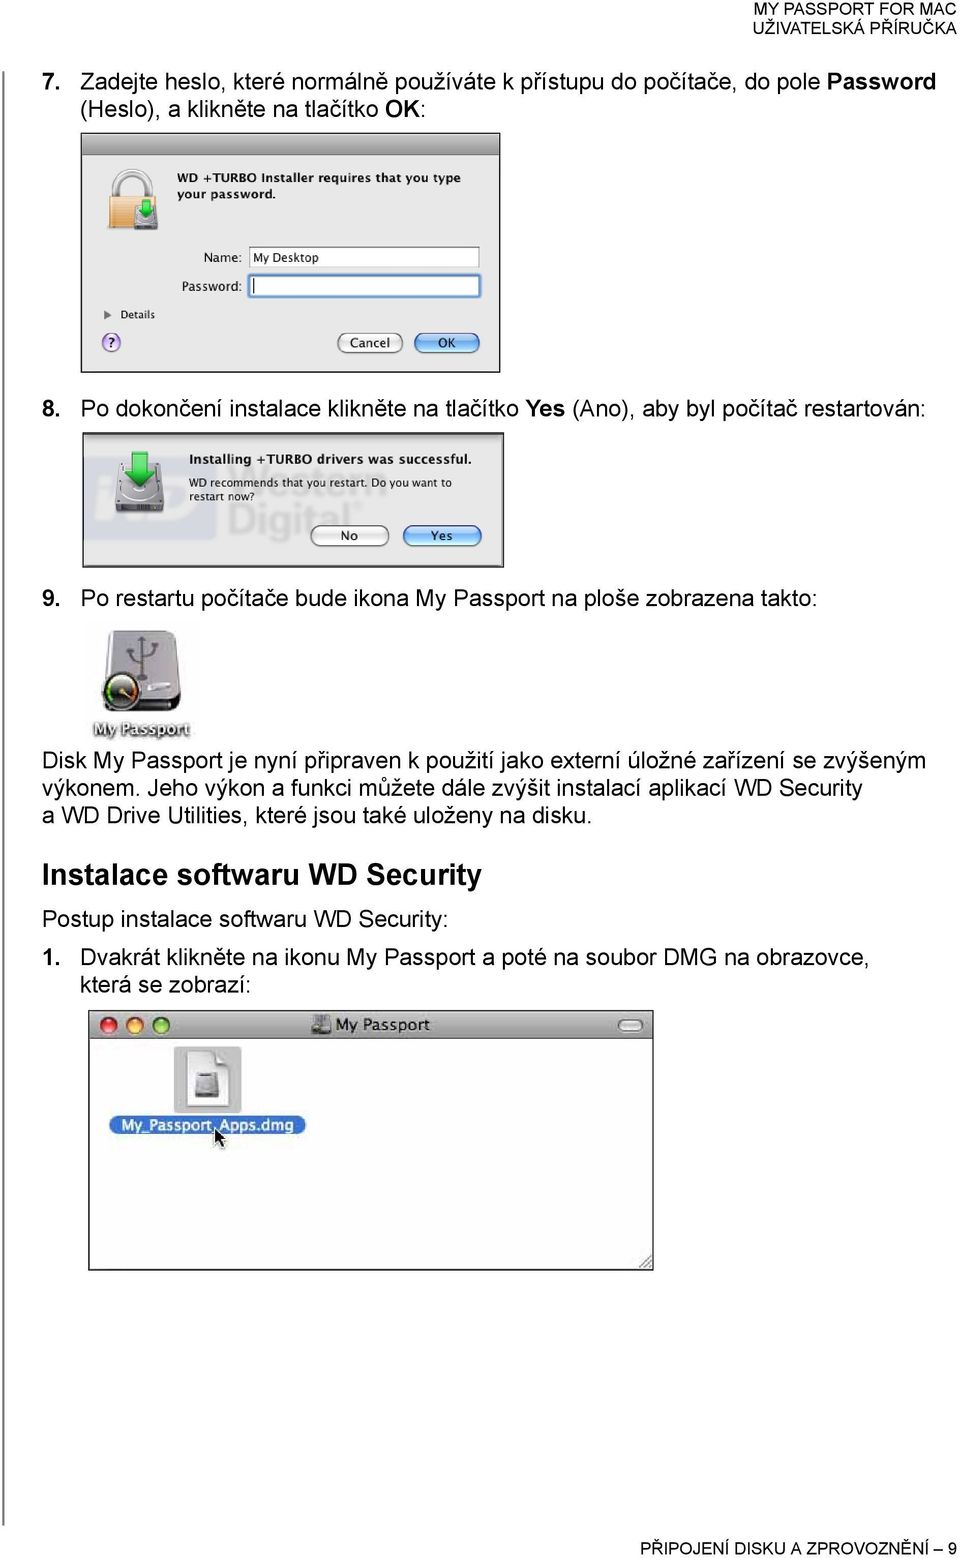 Po restartu počítače bude ikona My Passport na ploše zobrazena takto: Disk My Passport je nyní připraven k použití jako externí úložné zařízení se zvýšeným výkonem.